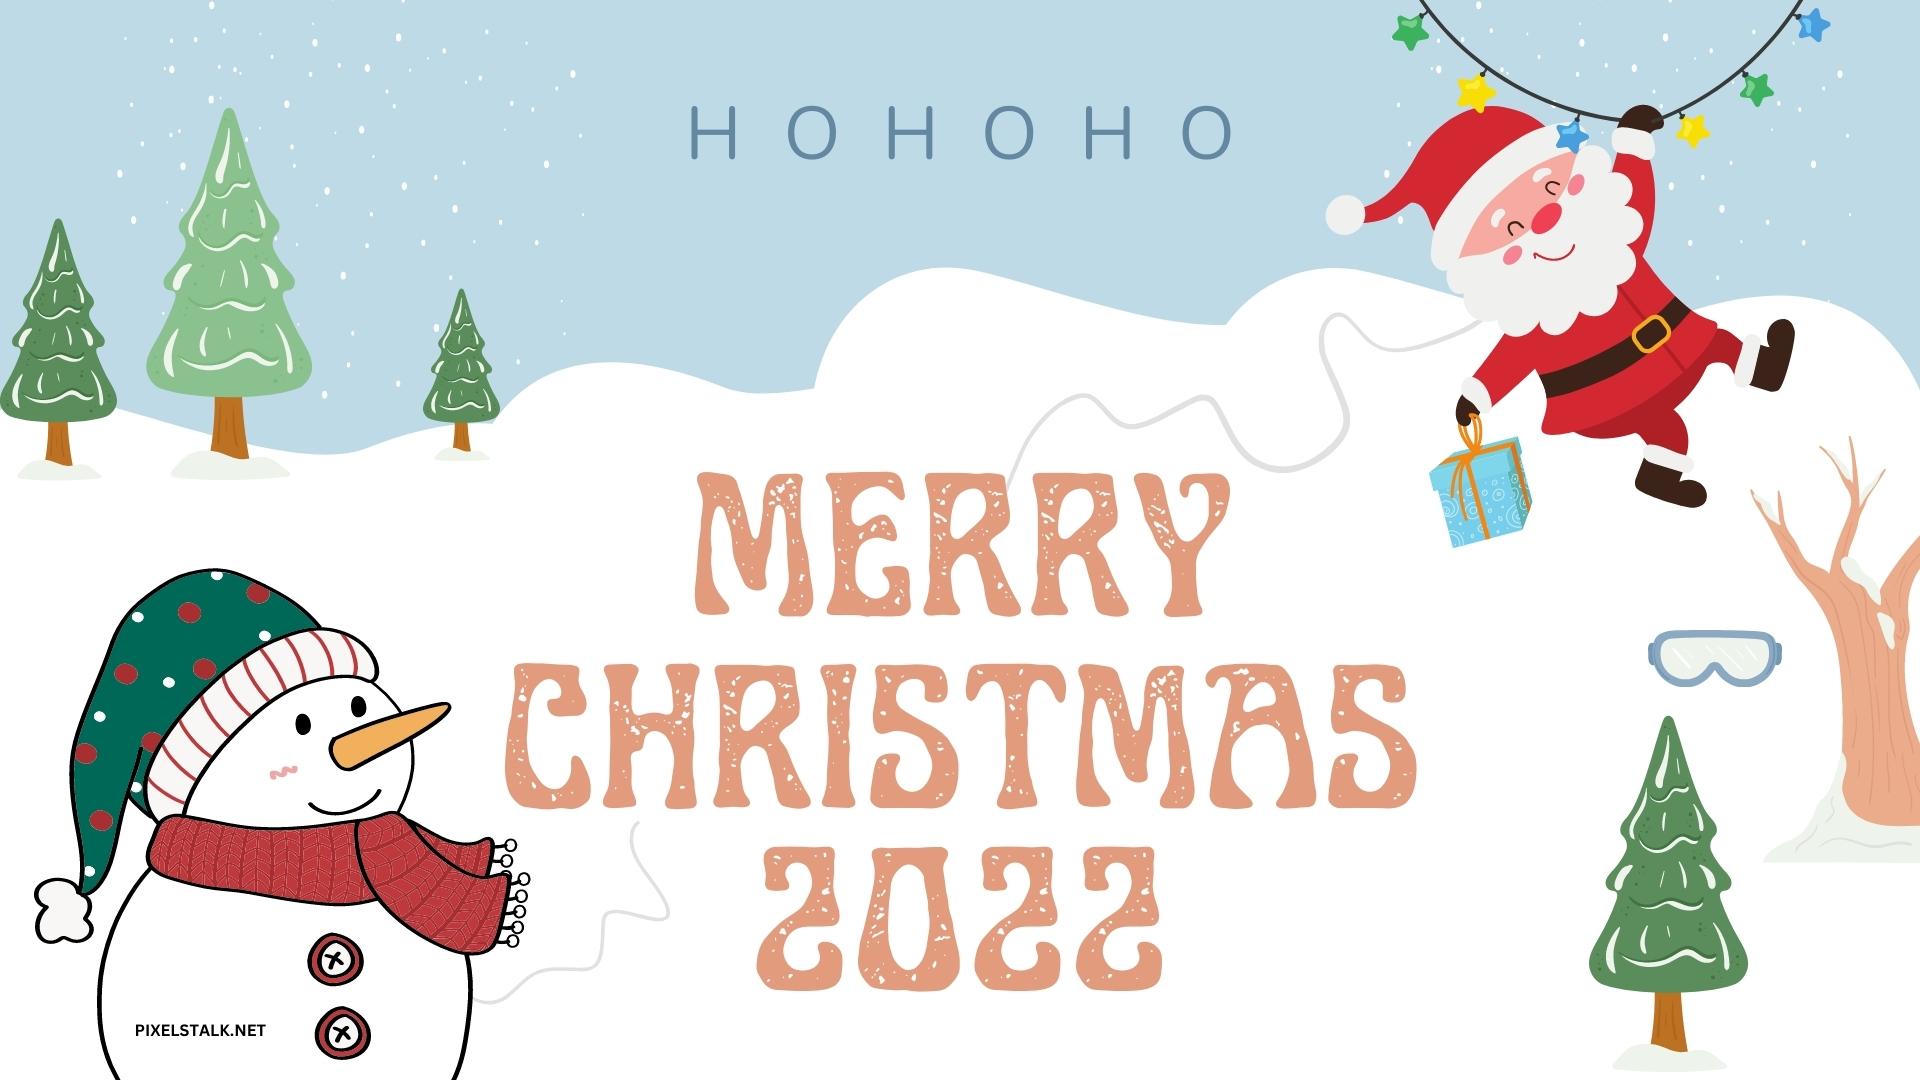 Bức tranh nền Giáng sinh 2022 đầy đủ và tuyệt đẹp đang chờ đón bạn. Hãy cùng khám phá những hoạt động đón năm mới và tận hưởng khoảnh khắc thật ý nghĩa trong ngày lễ hội này. Chúc mừng Giáng Sinh!